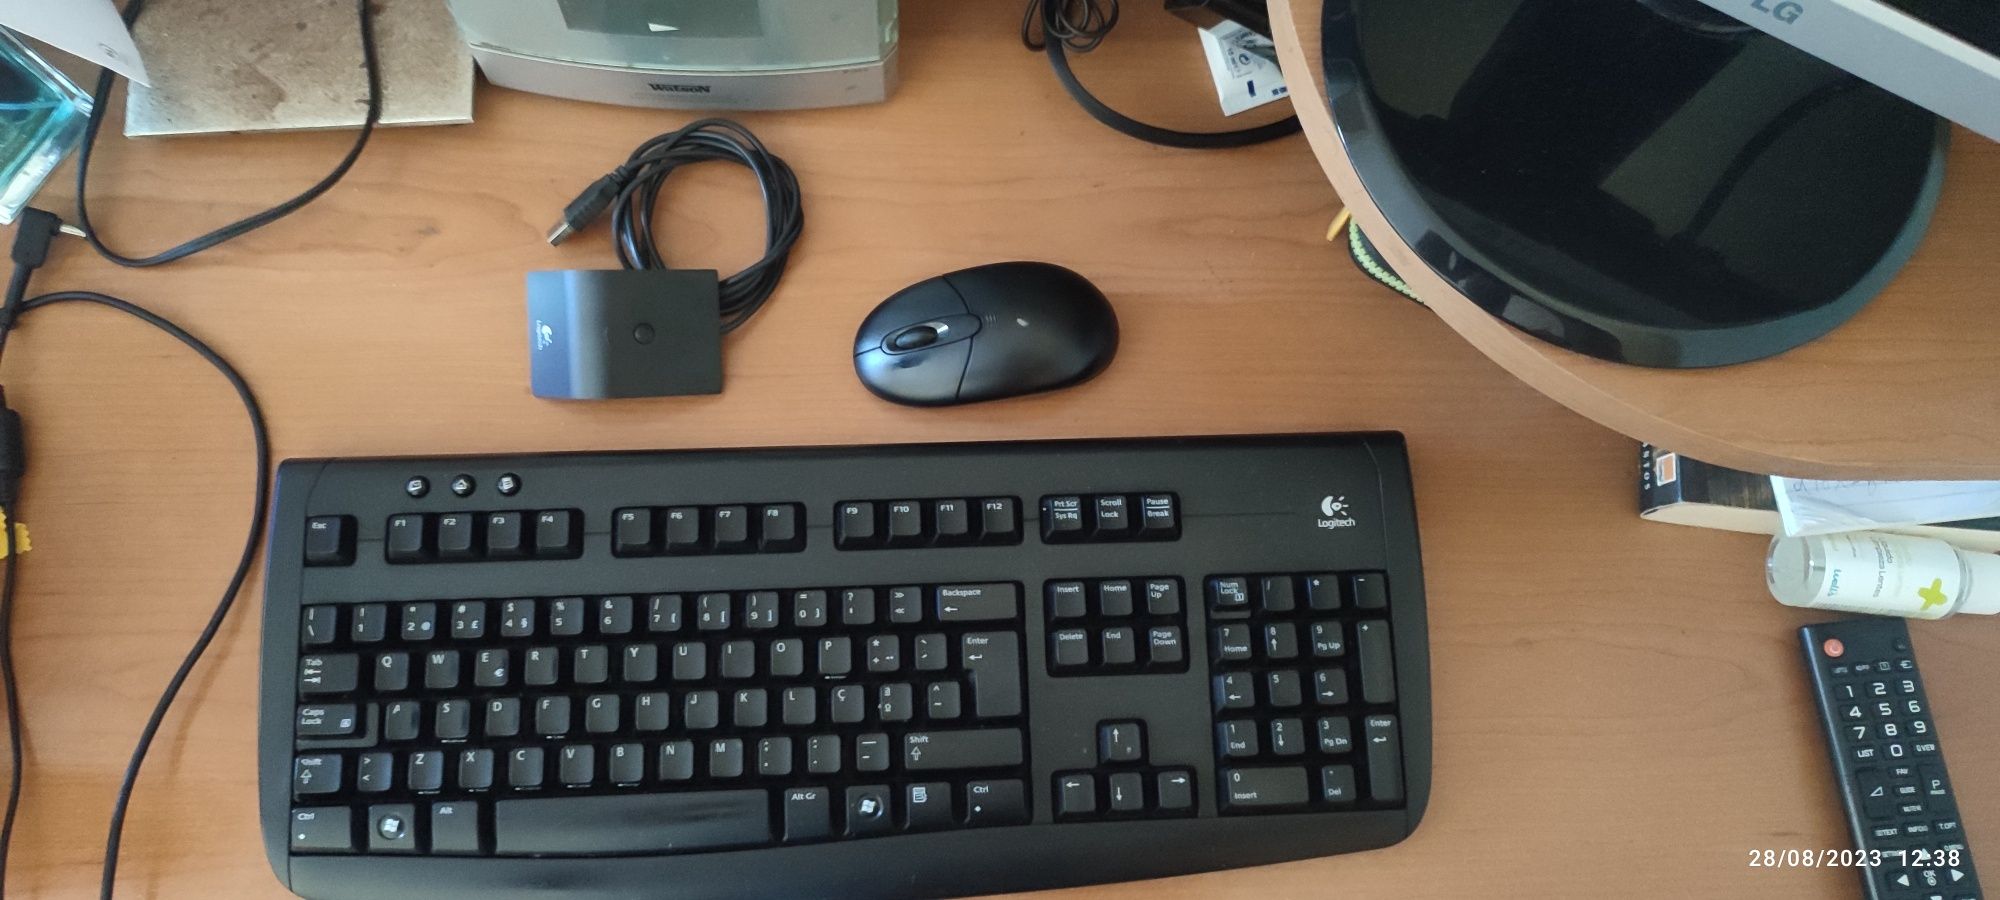 Vendo monitor+teclado sem fios e rato sem fios 
Tudo a funcionar perfe